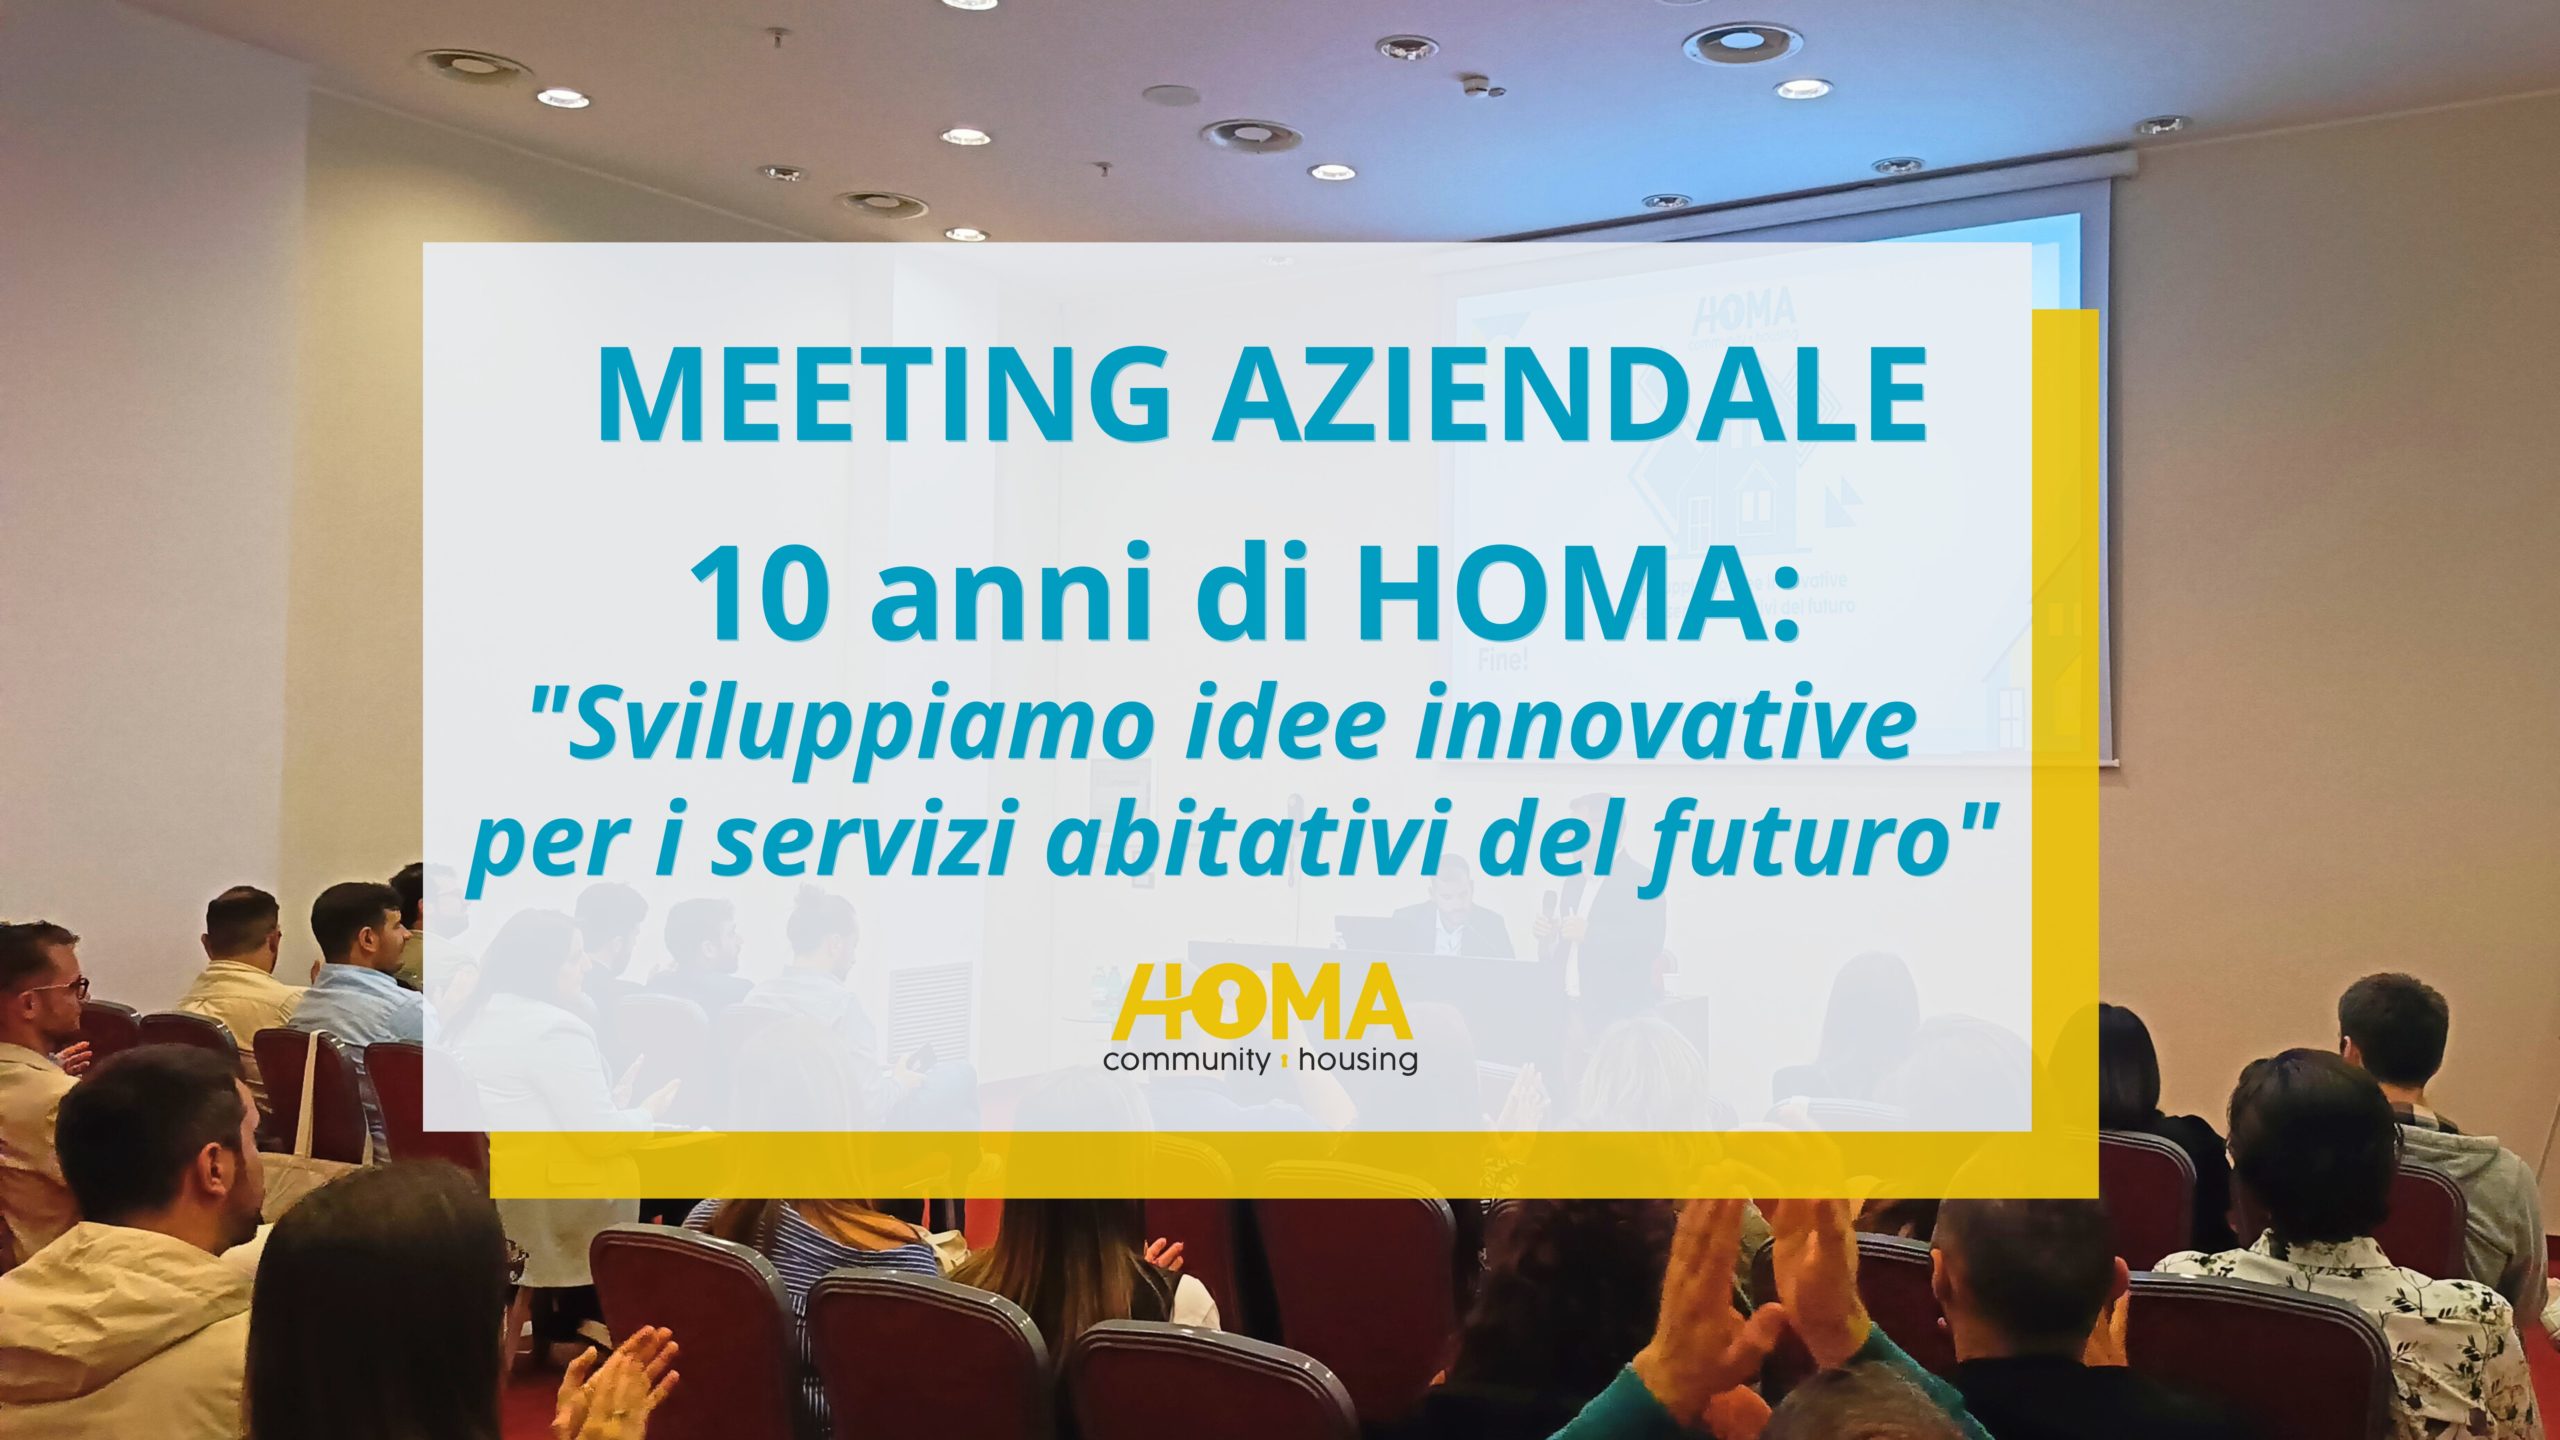 “Sviluppiamo idee innovative per i servizi abitativi del futuro”: il meeting aziendale che ha celebrato i primi 10 anni di Homa